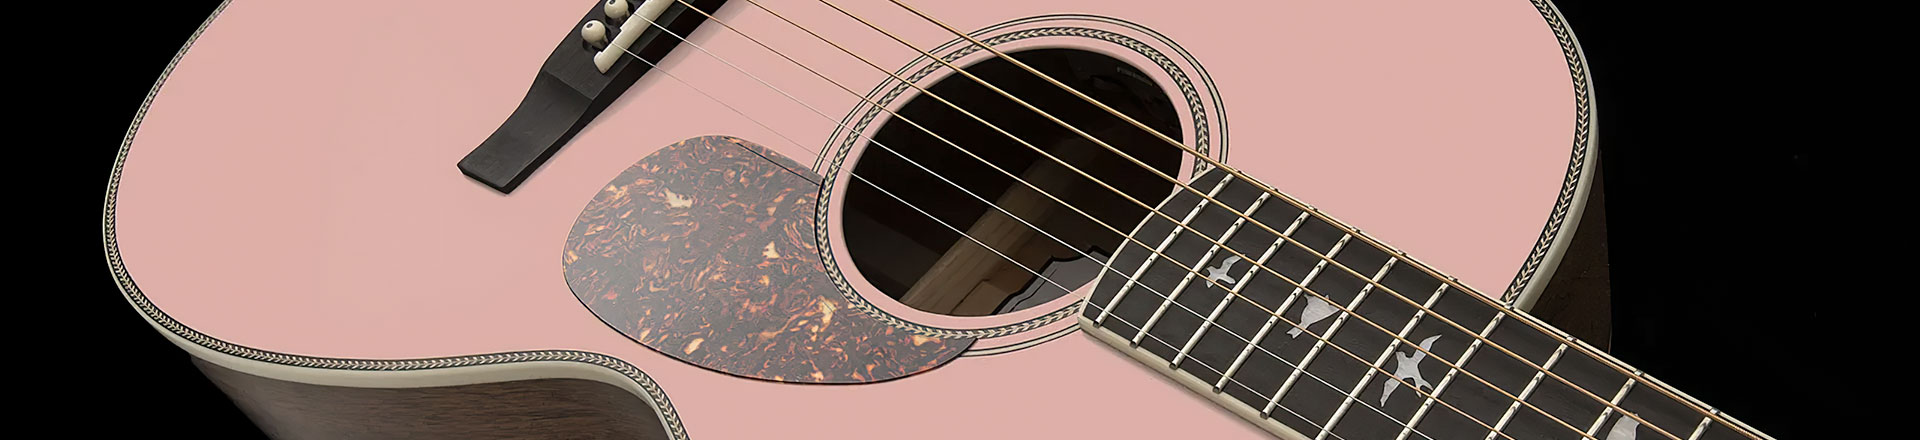 Piękna, limitowana kompaktowa gitara od PRS serii Parlor "Pink Lotus"